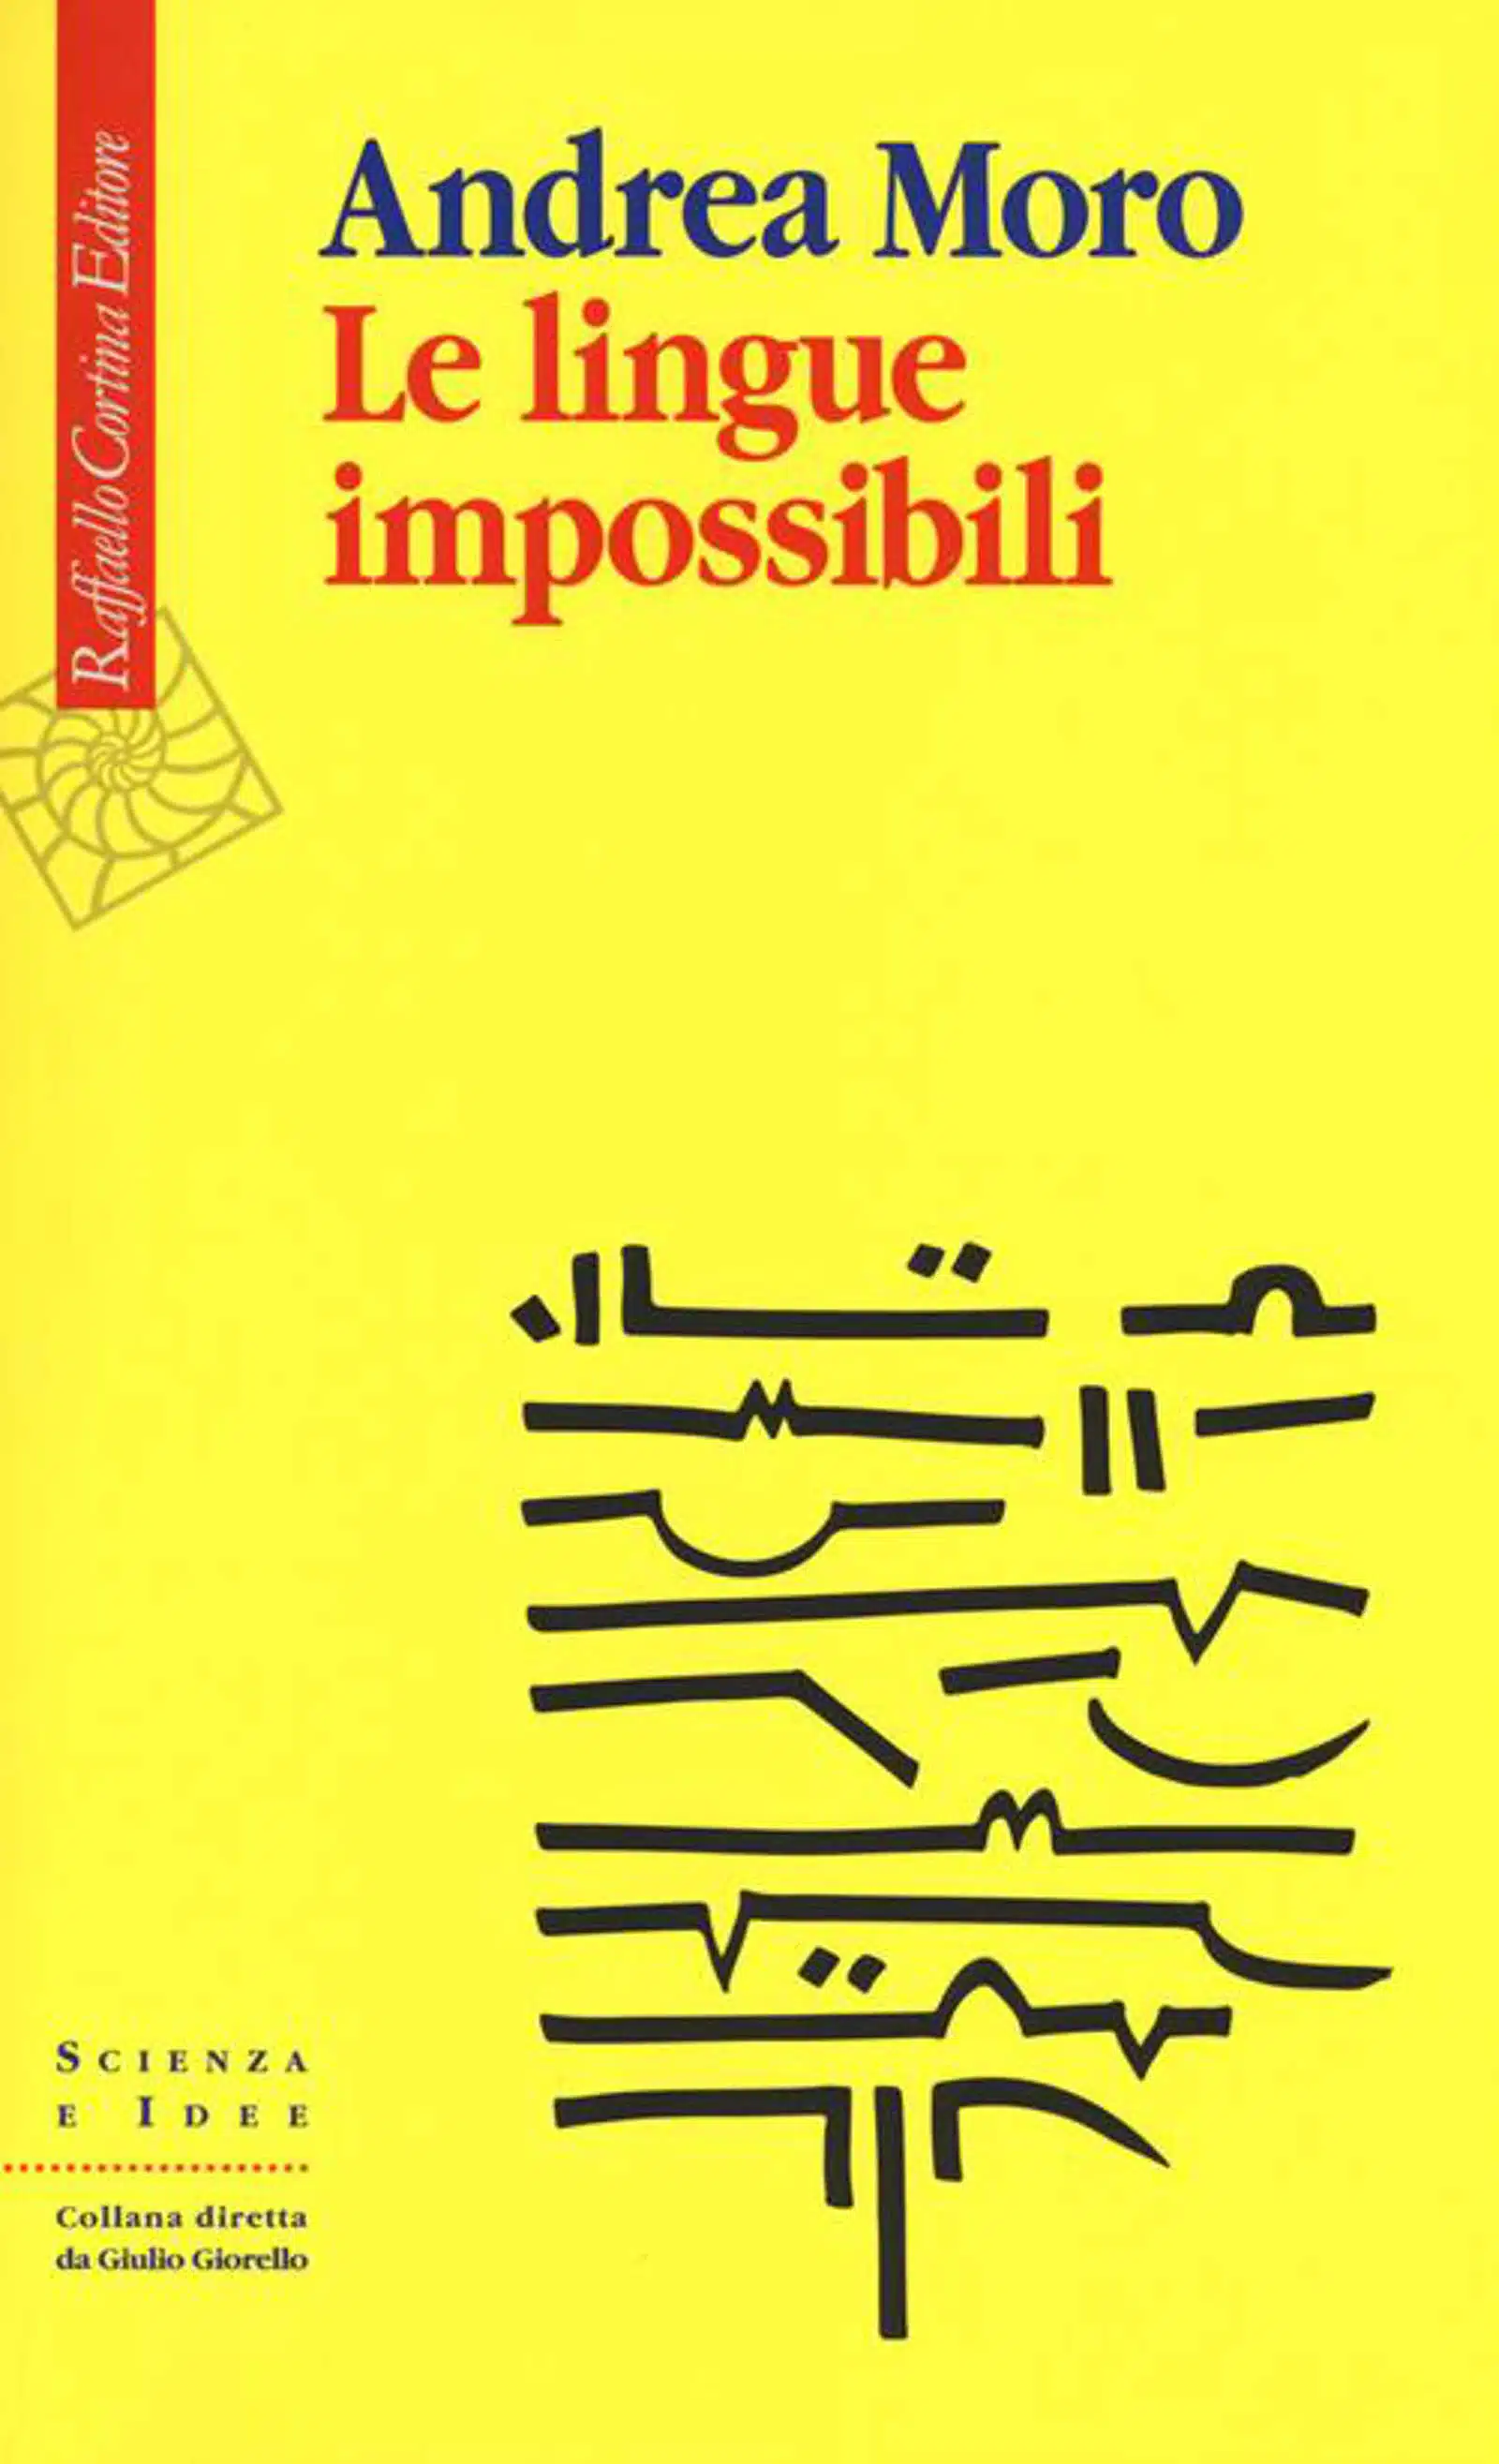 Le lingue impossibili 2017 di Andrea Moro Recensione del libro Main